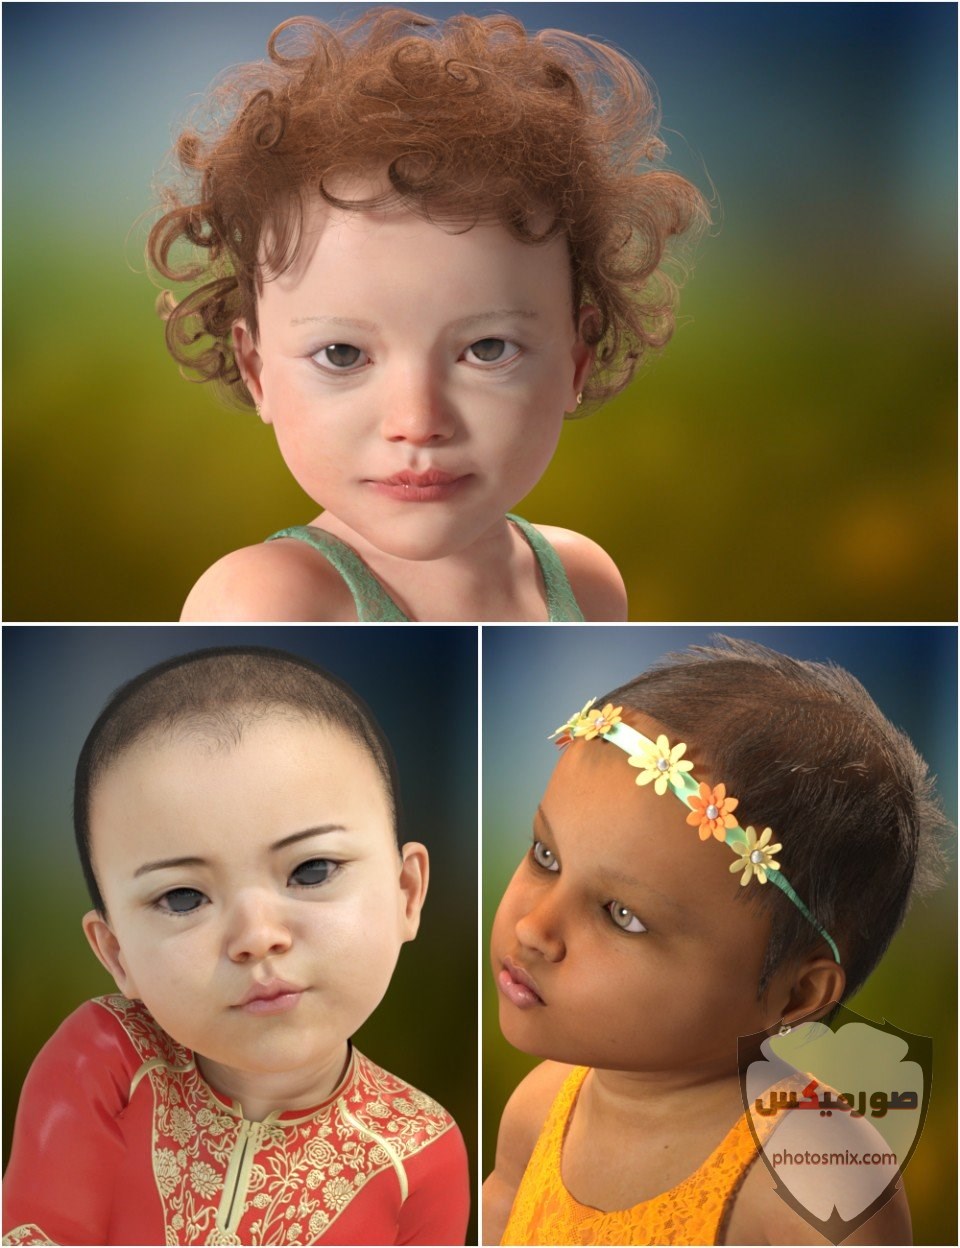 صور اطفال 2021 تحميل اكثر من 100 صور اطفال جميلة صور اطفال روعة 2020 60 1